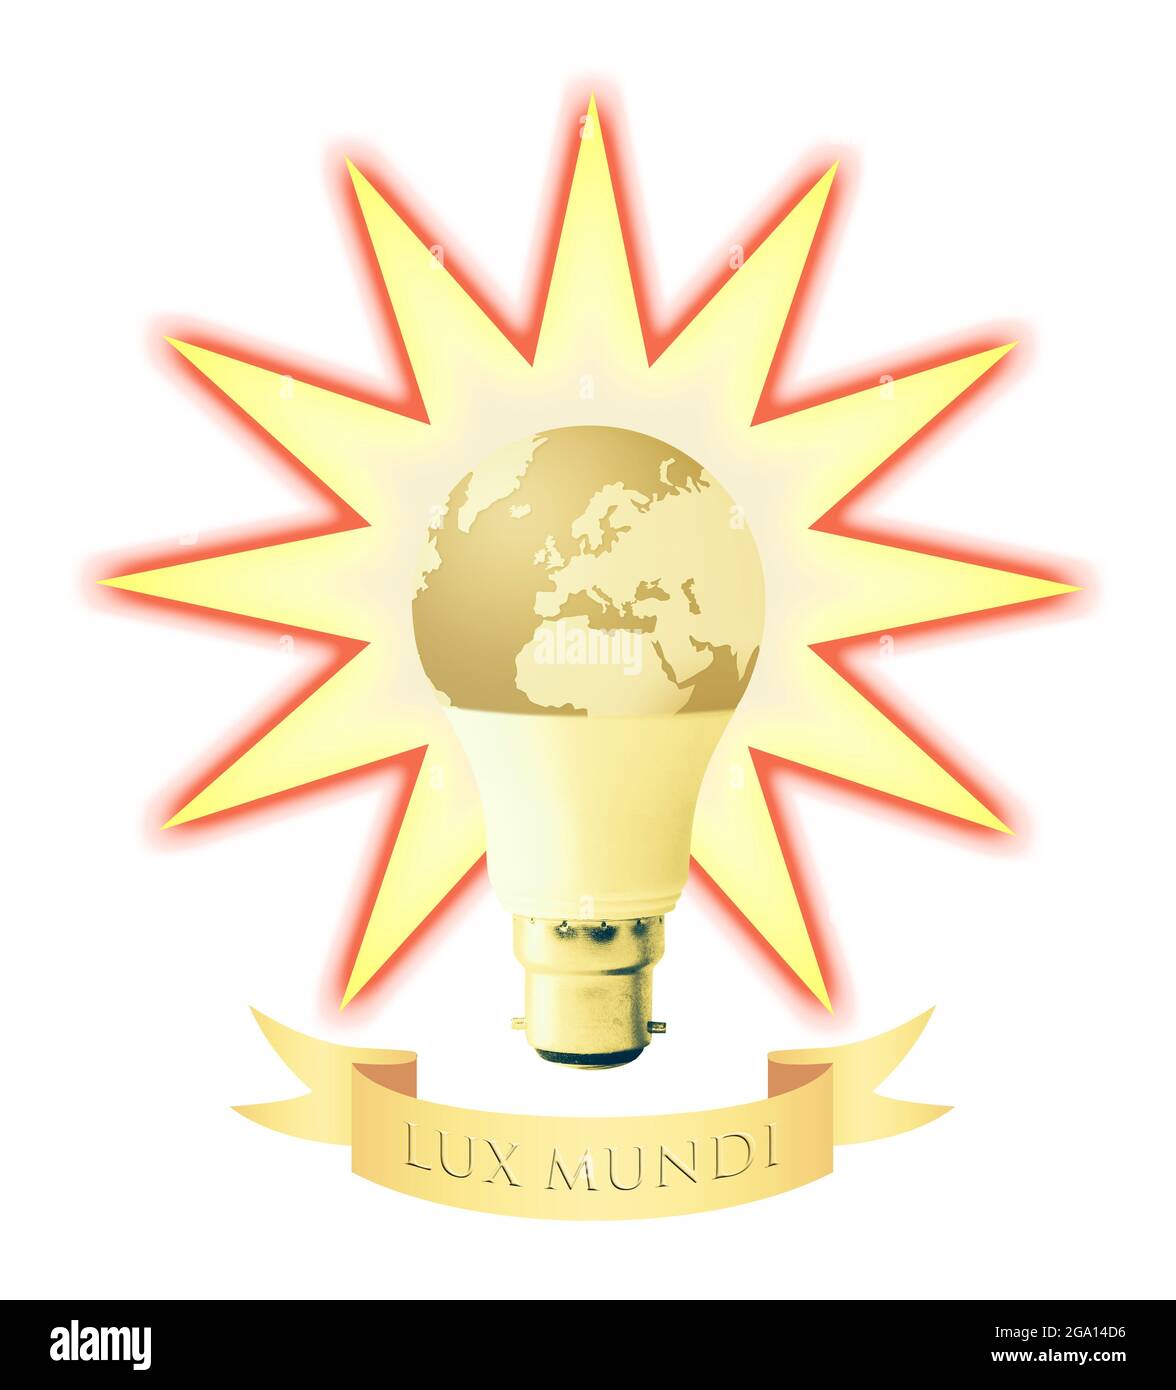 Immagine concettuale della terra come una lampadina con un contorno radioso e l'iscrizione latina 'Lux Mundi' (luce del mondo) Foto Stock